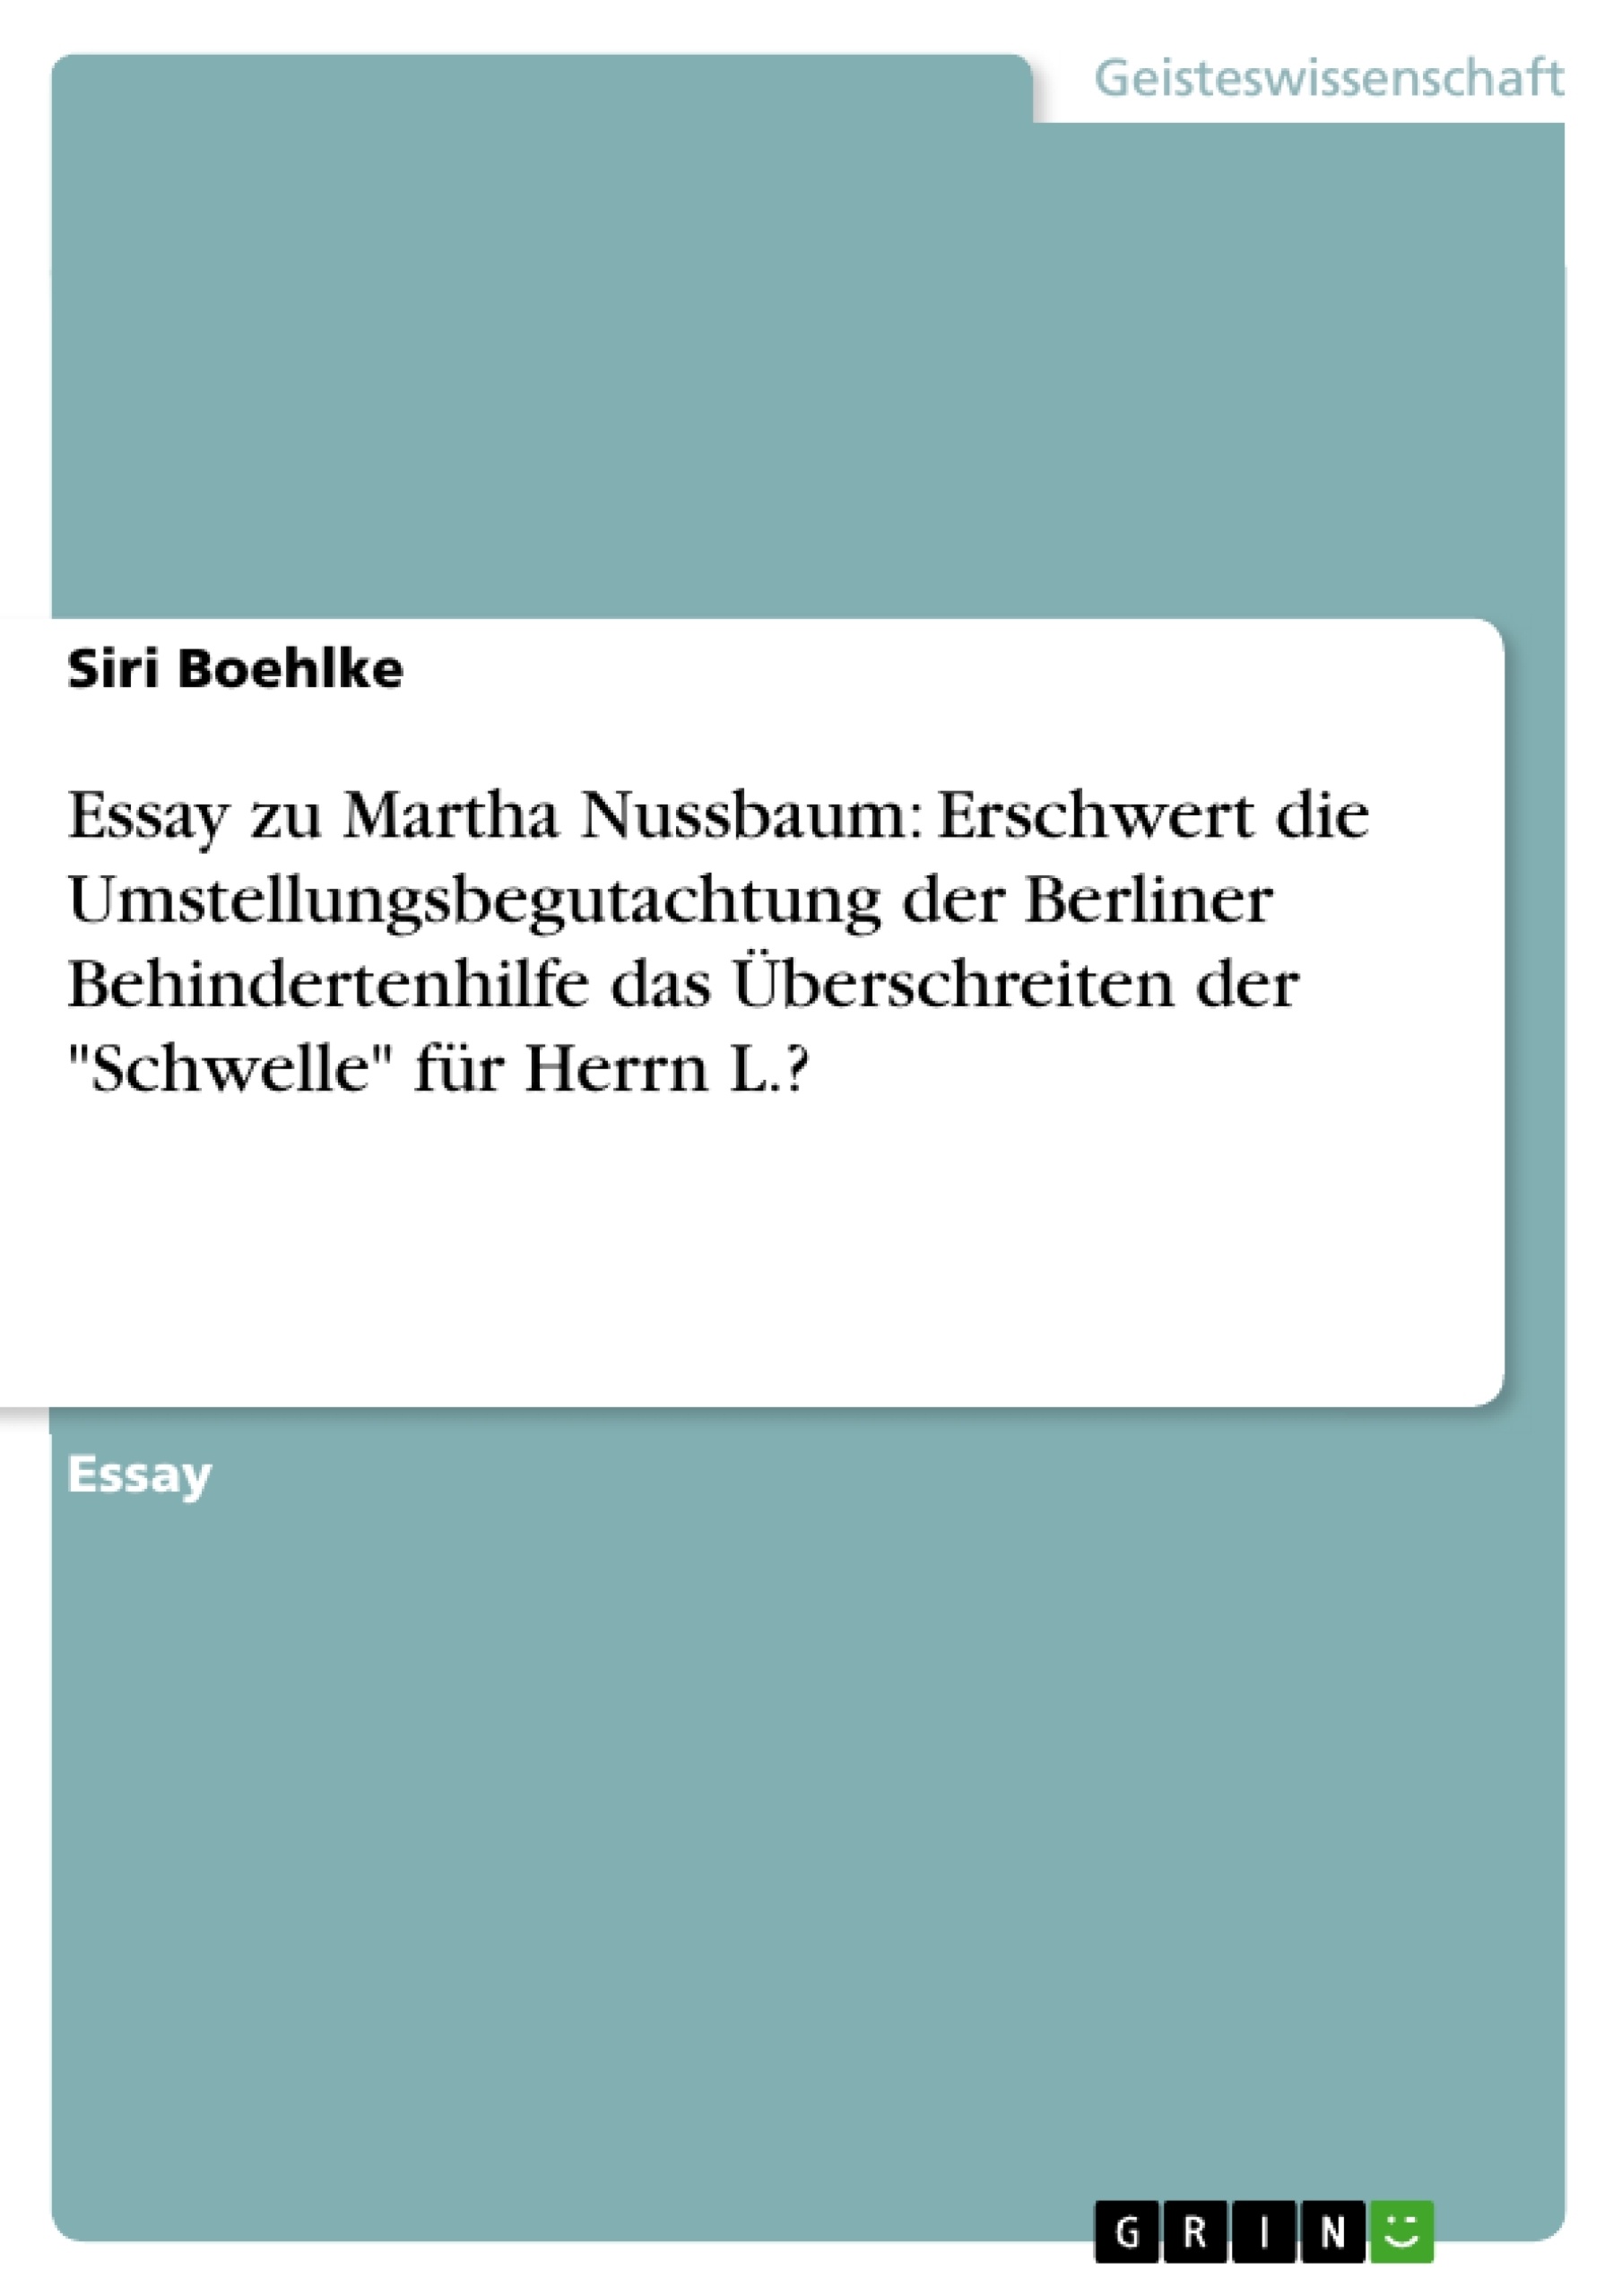 Titel: Essay zu Martha Nussbaum: Erschwert die Umstellungsbegutachtung der Berliner Behindertenhilfe das Überschreiten der "Schwelle" für Herrn L.?